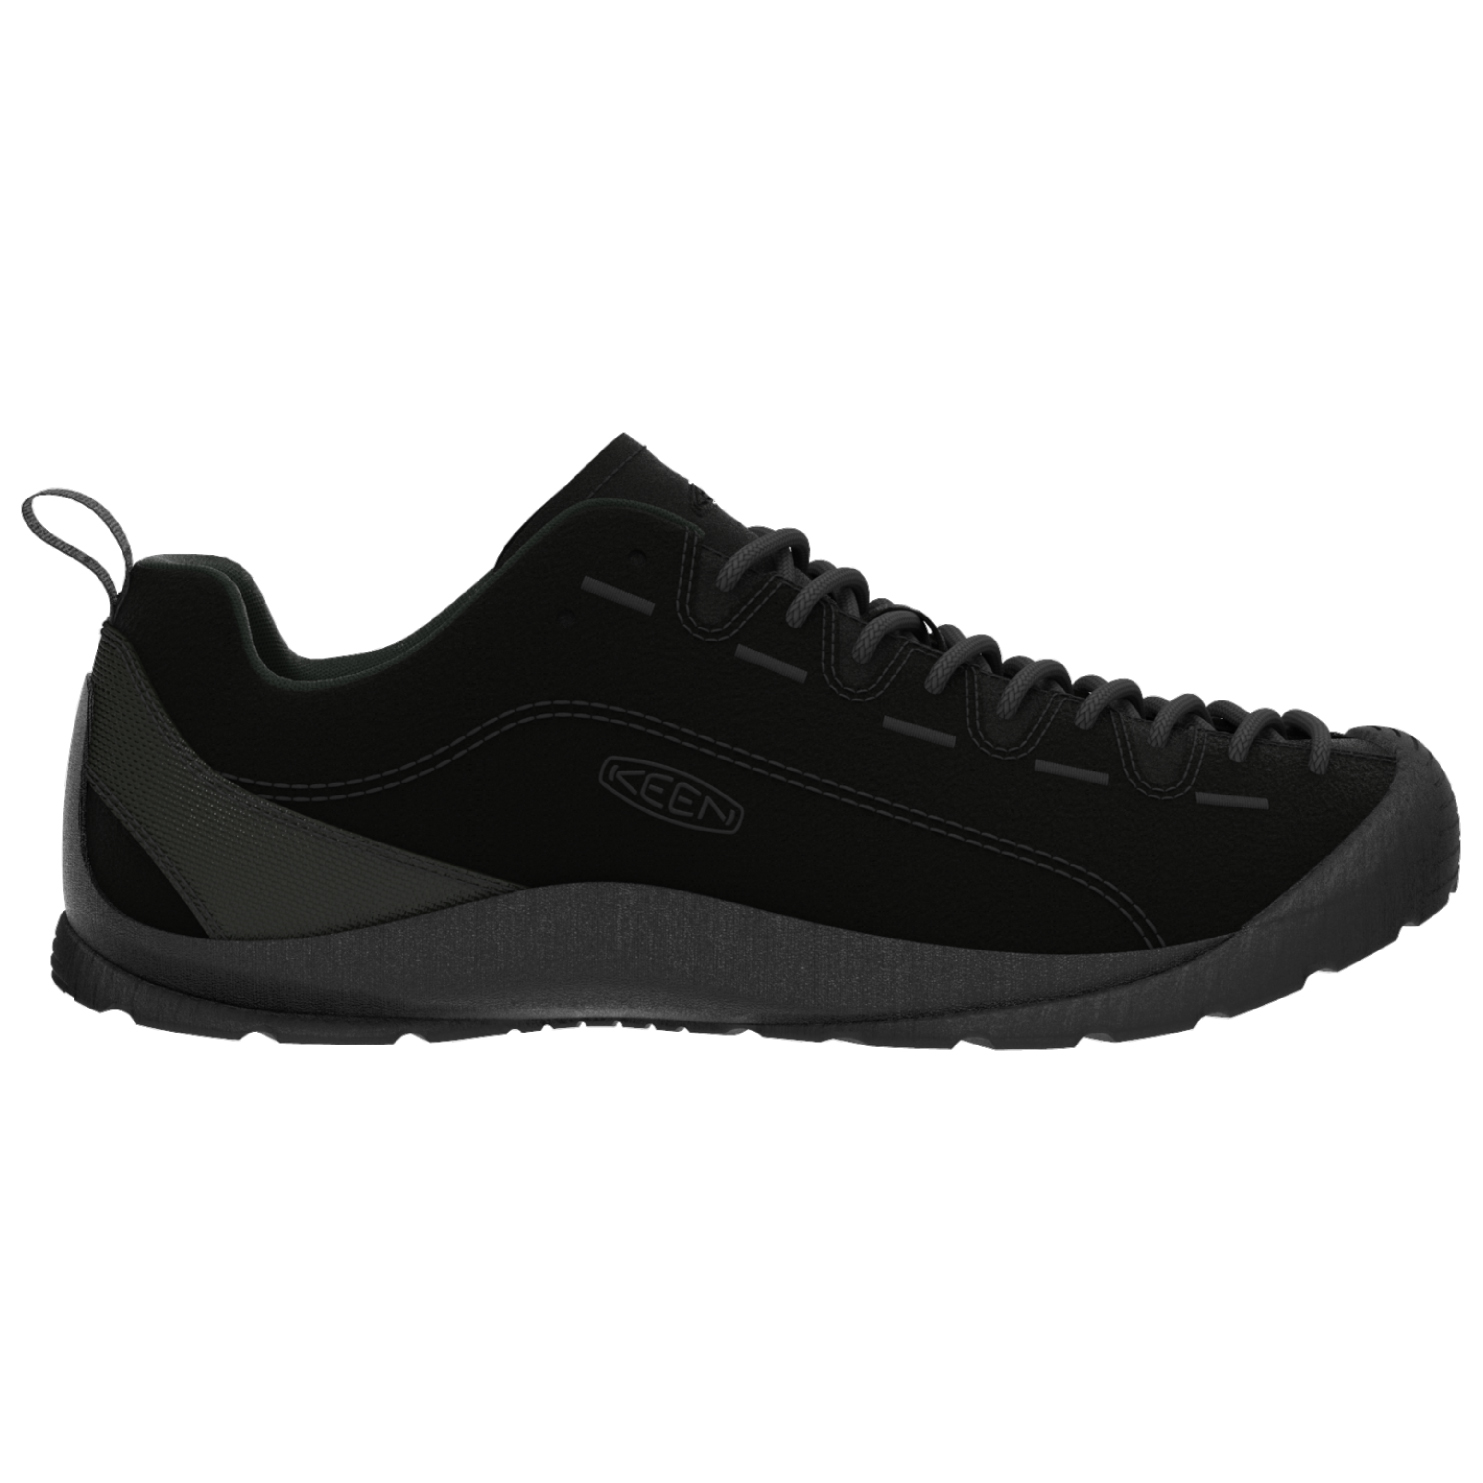 Повседневная обувь Keen Jasper, цвет Hairy Black/Black кроссовки keen jasper коричневый черный